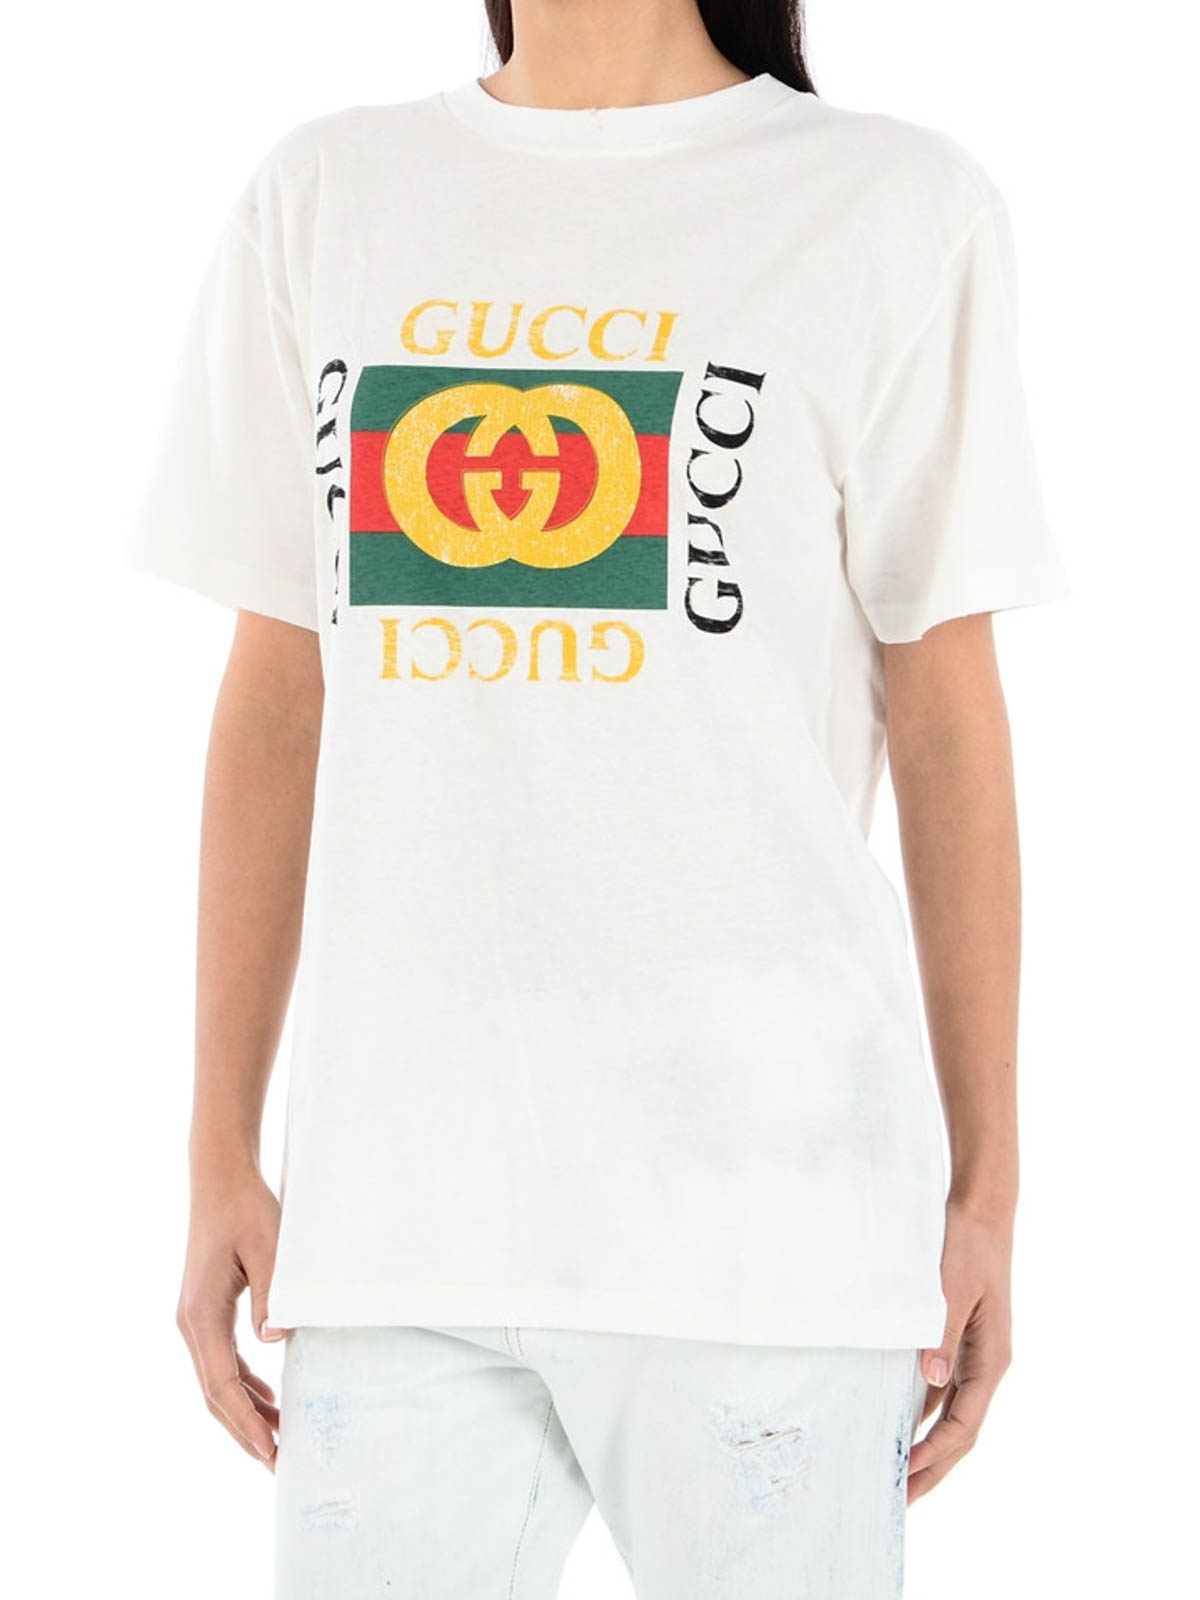 iKRIX Tシャツ - Gucci Tシャツ レディース - 白 | iKRIX(アイクリクス)